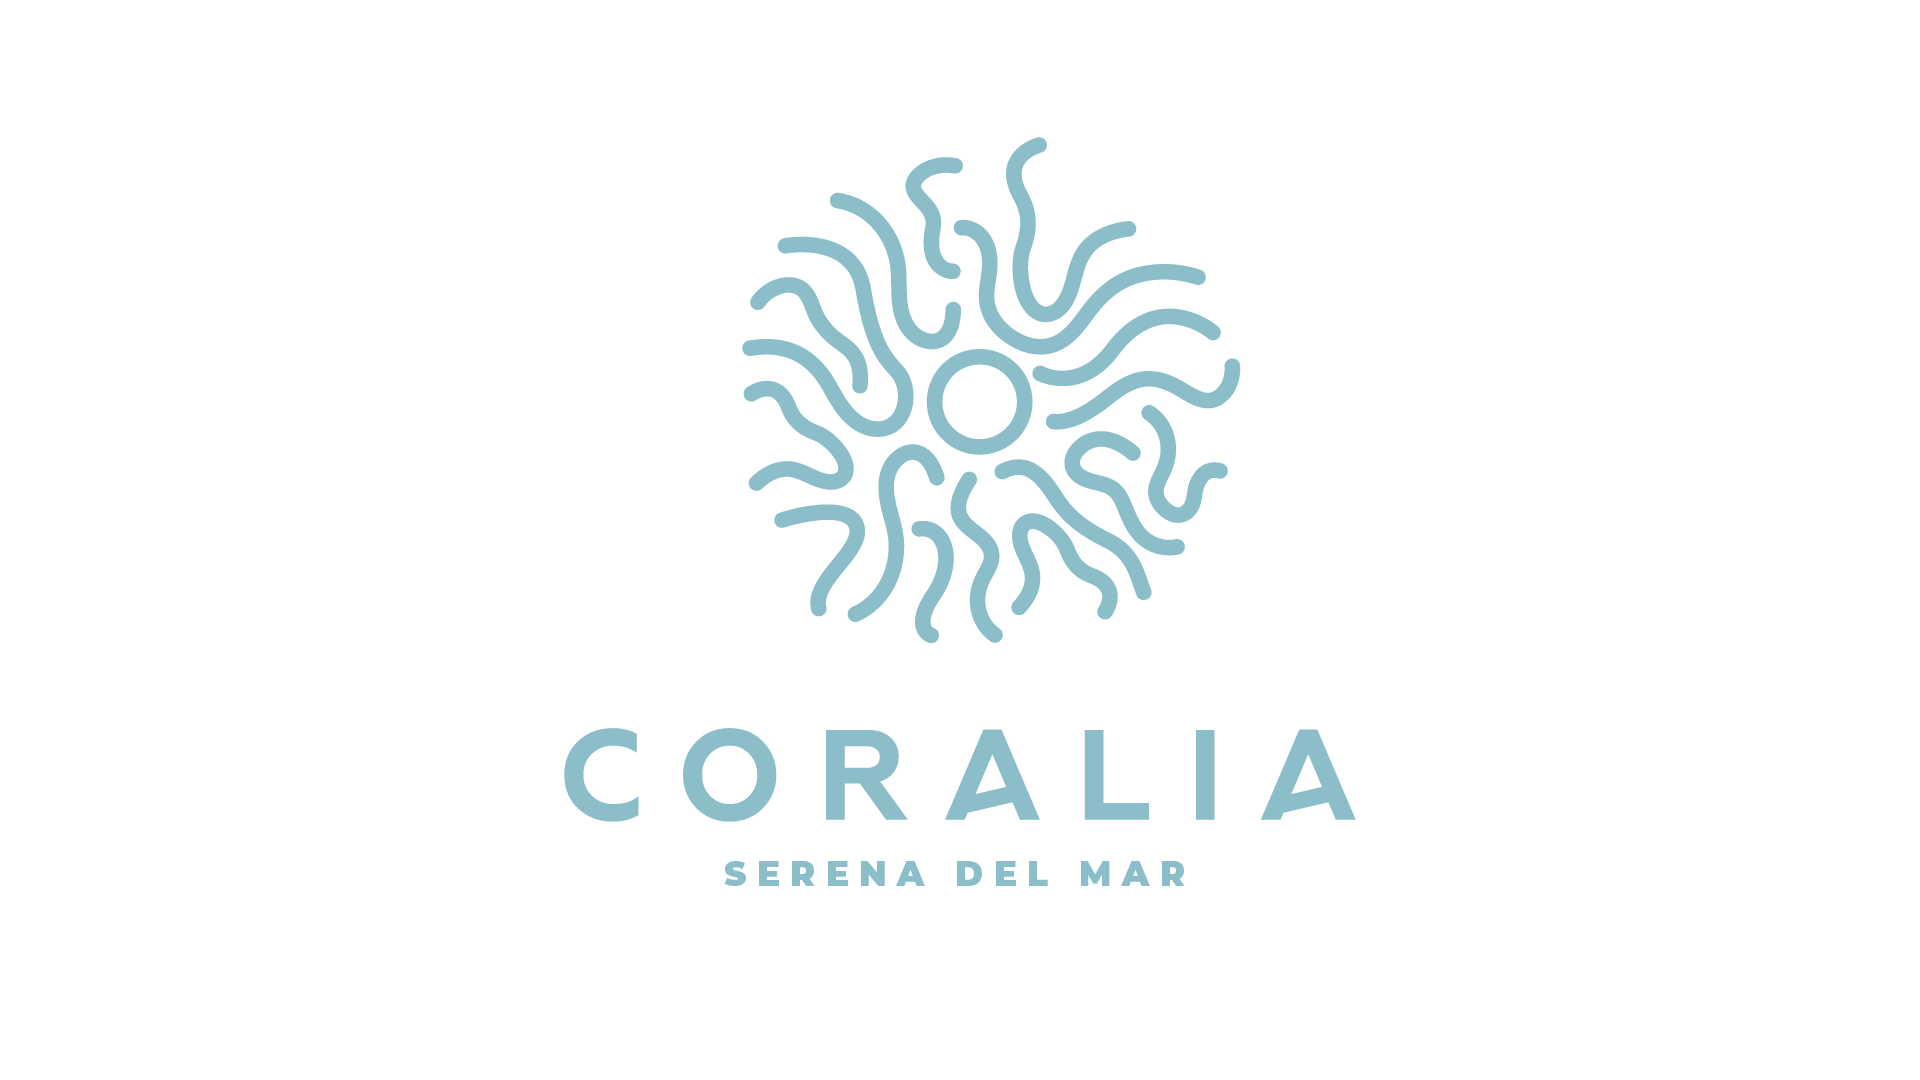 Coralia apartamentos, en Cartagena nace la buena vida.